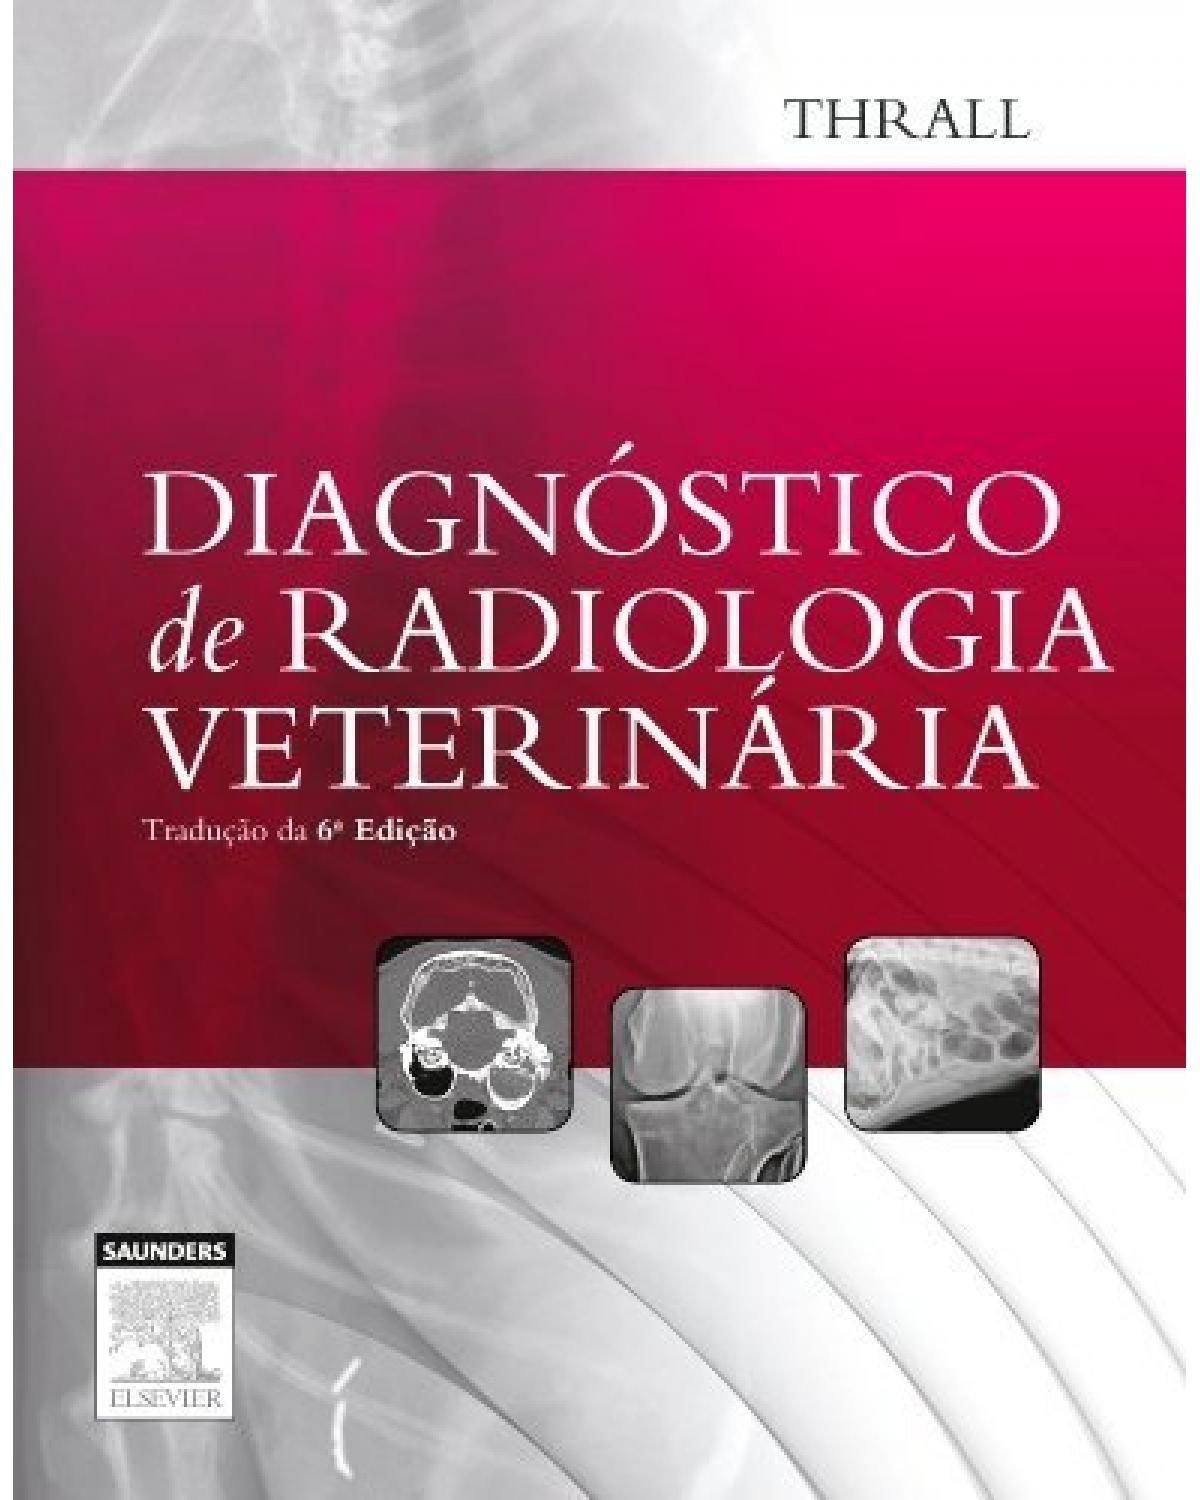 Diagnóstico de radiologia veterinária - 6ª Edição | 2014